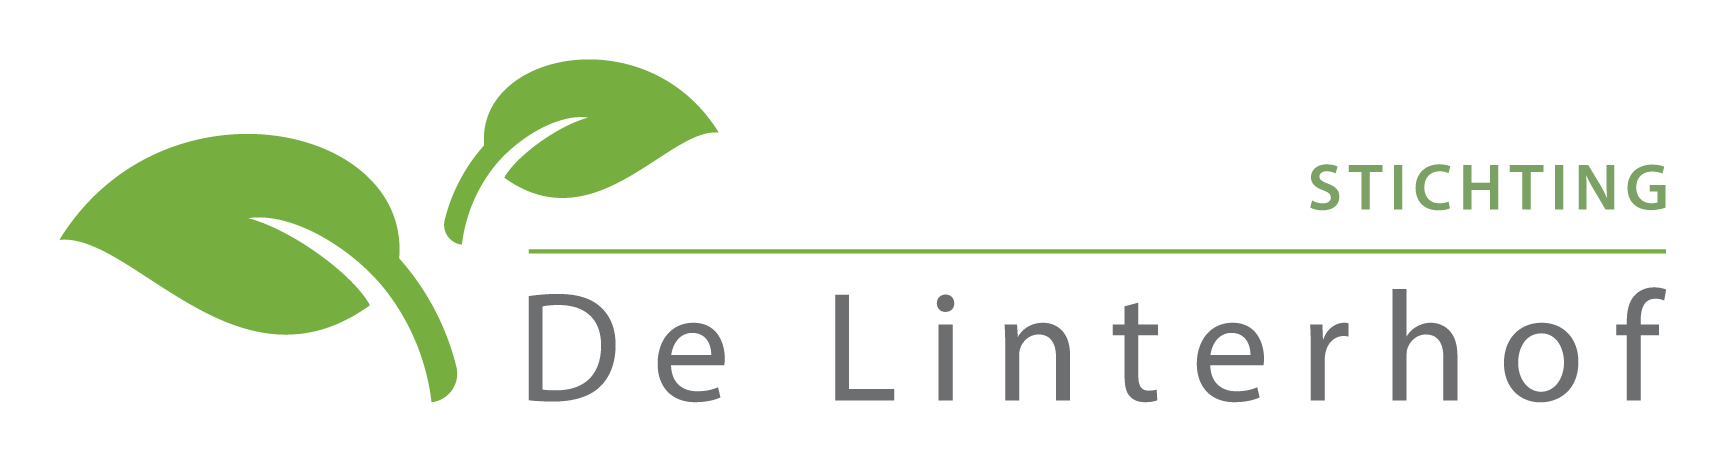 Stichting De Linterhof Logo